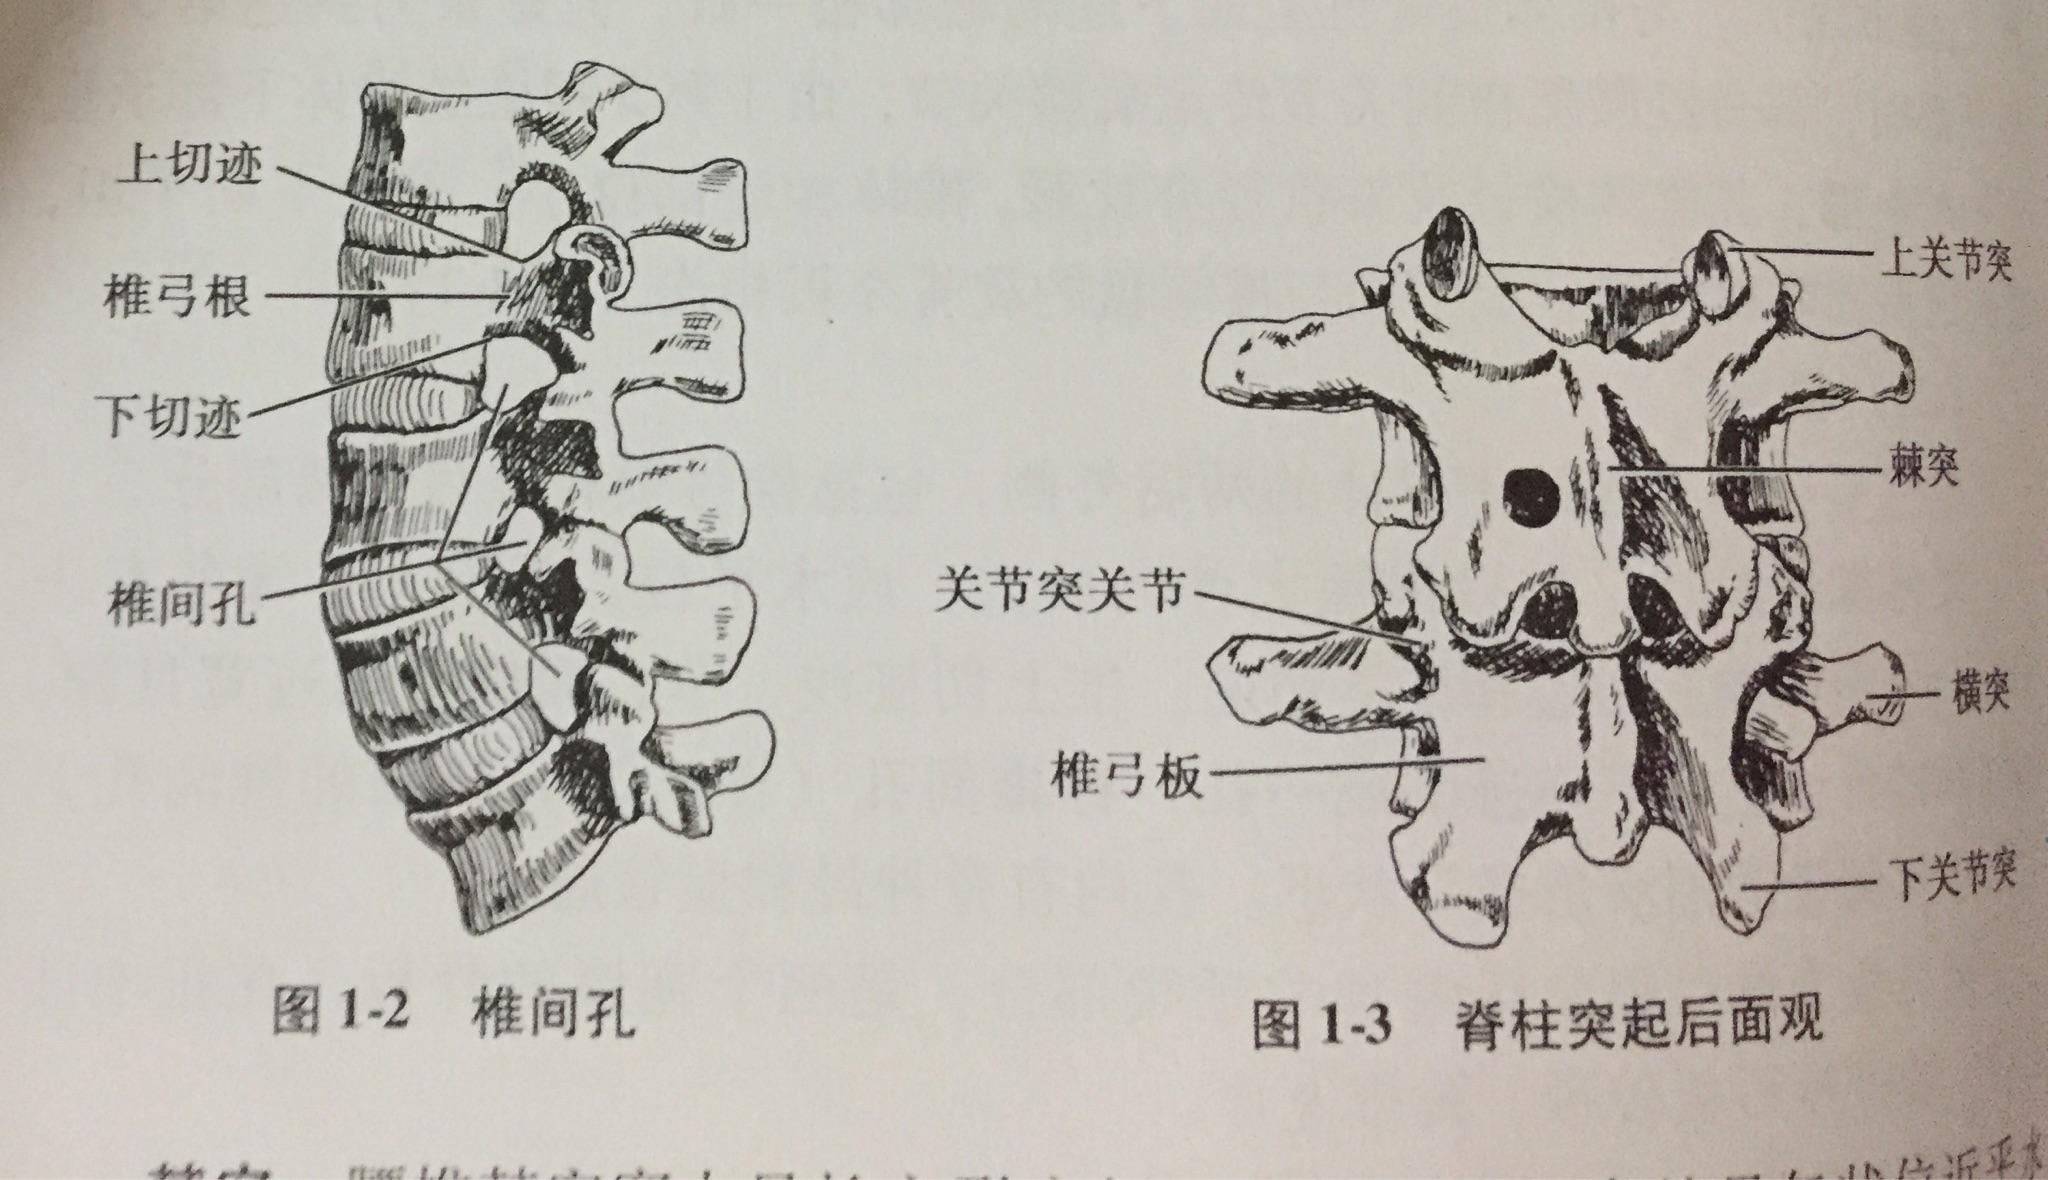 椎弓根的影像解剖图图片